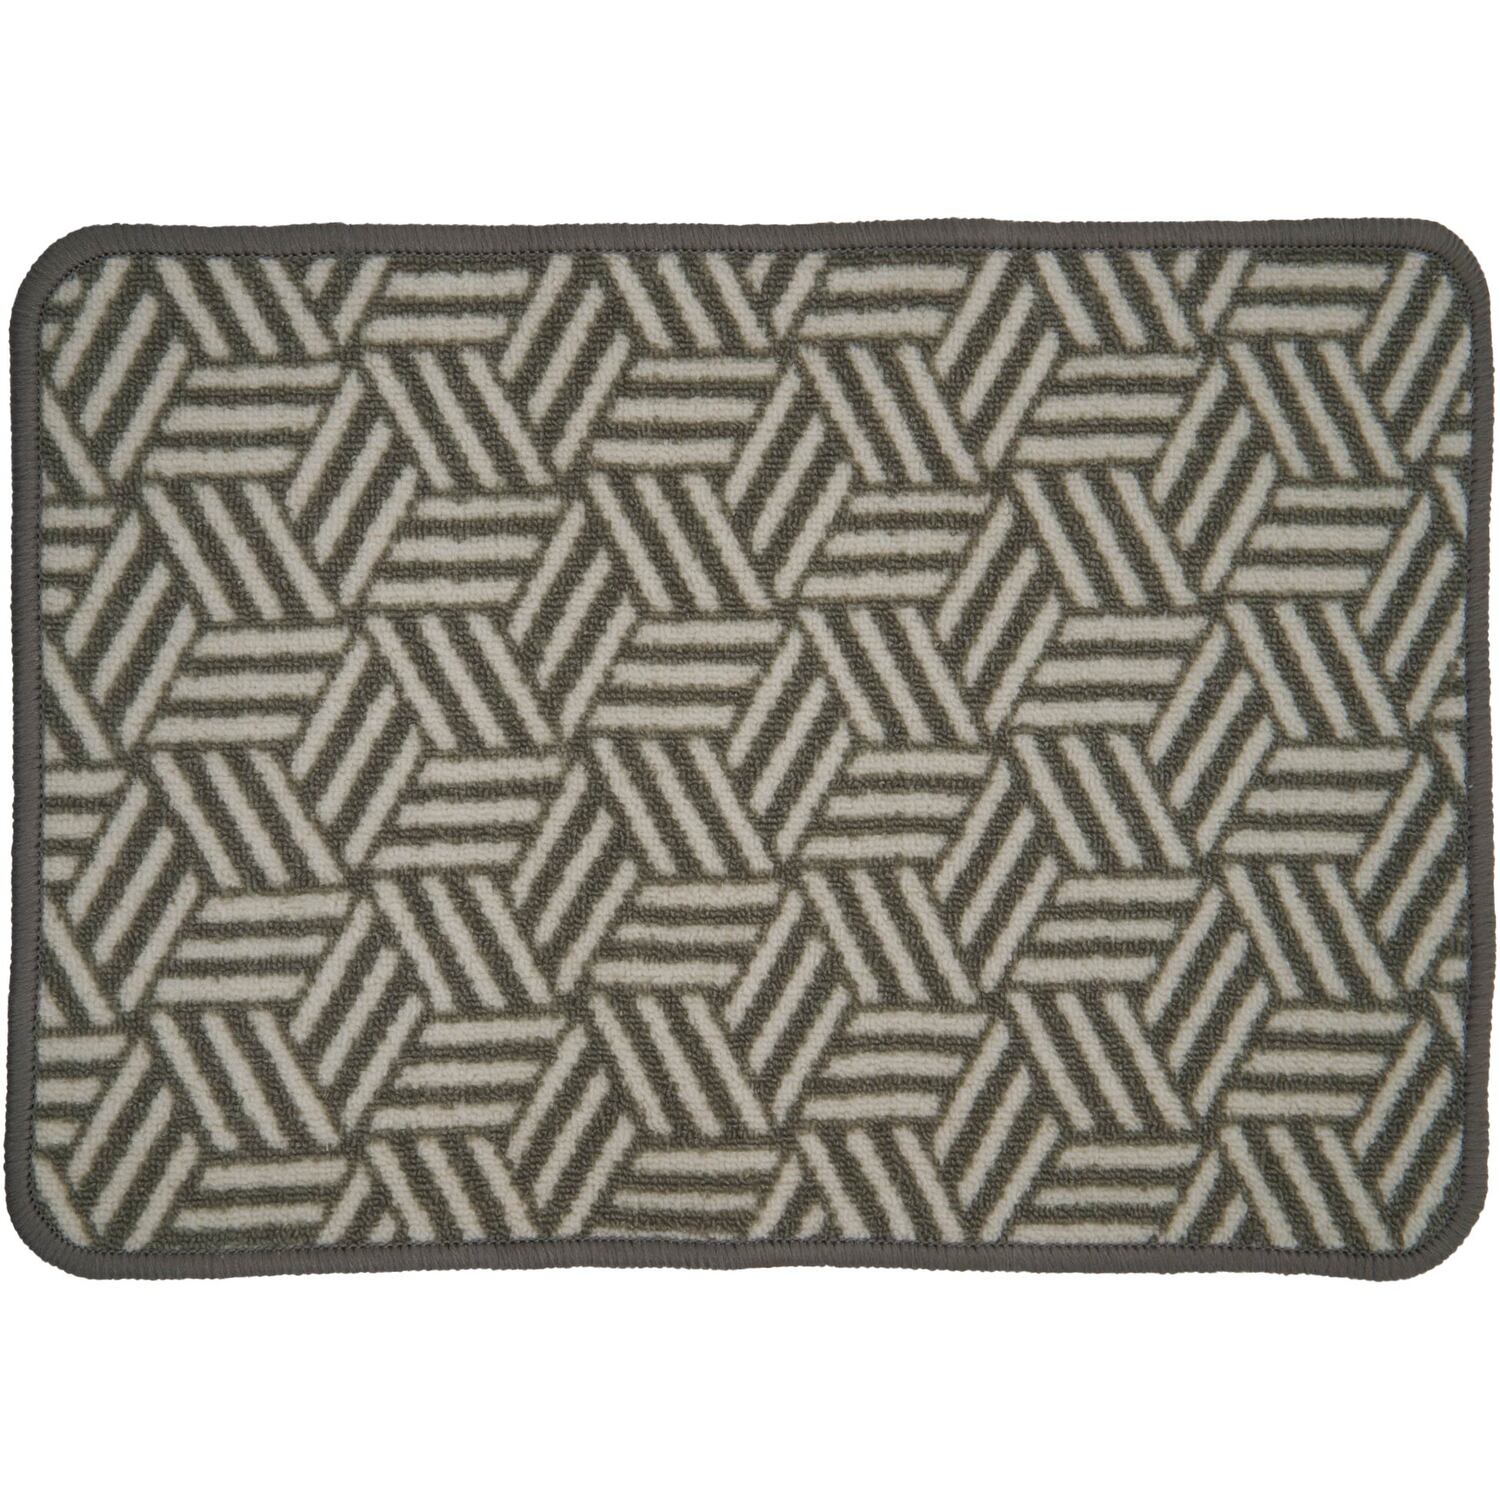 Washable Doormat - Grey Image 1